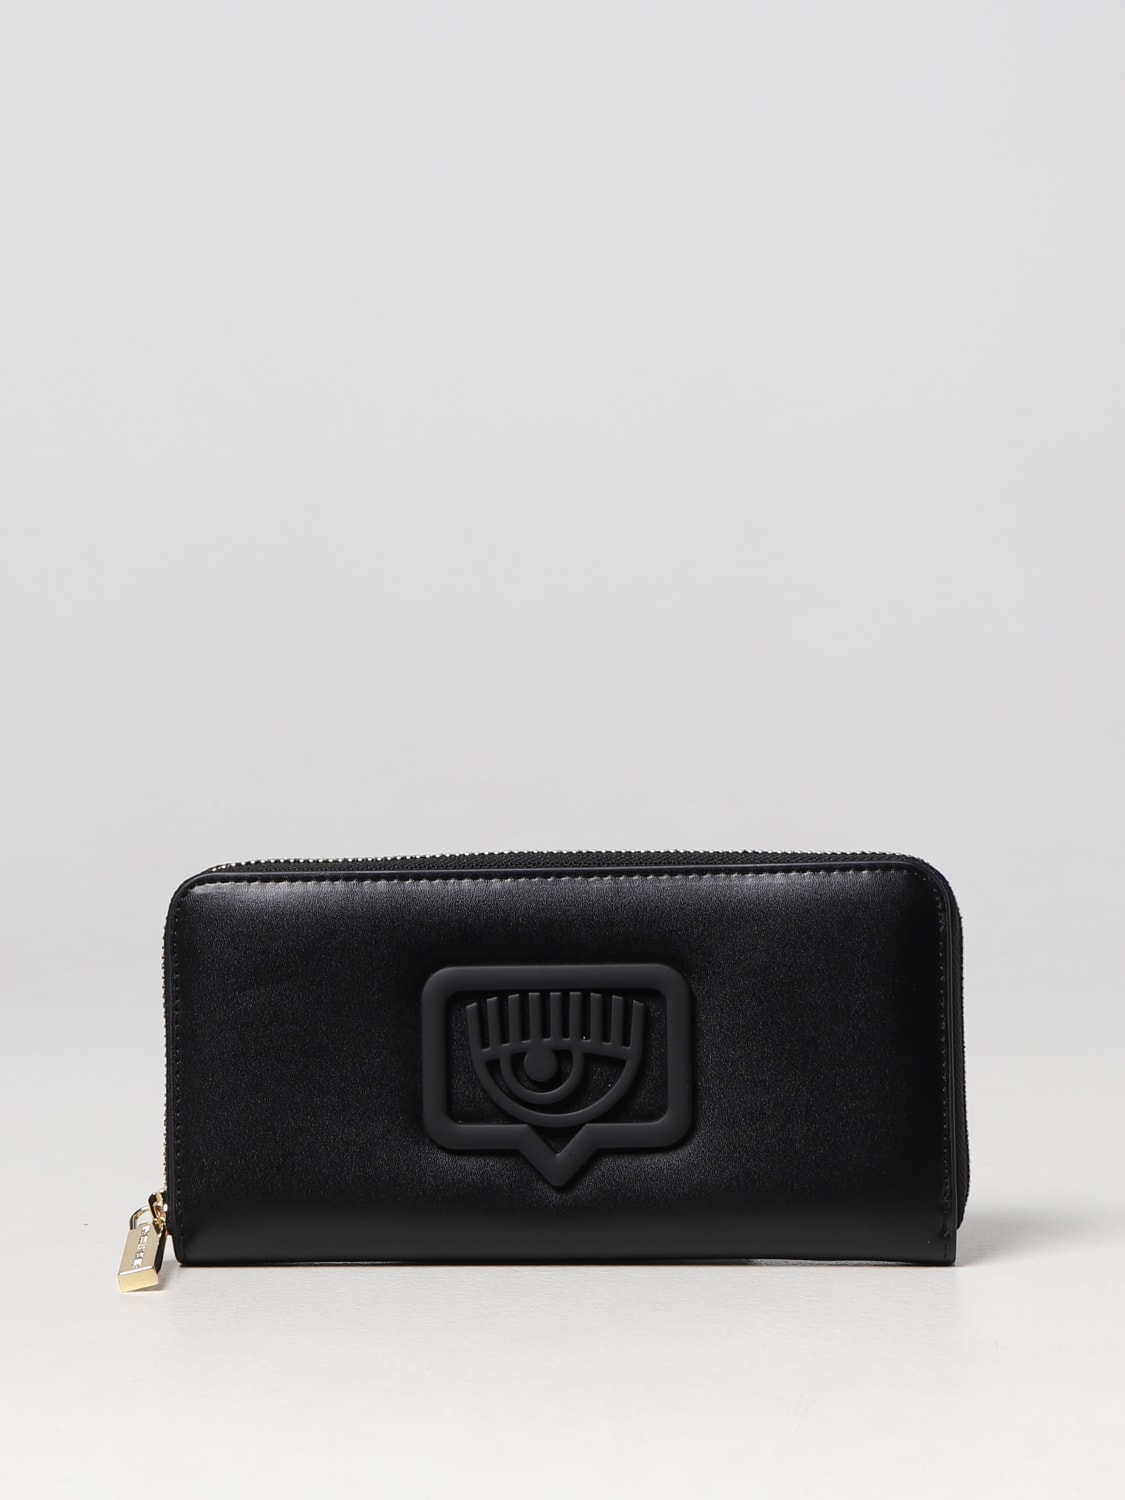 Chiara Ferragni Women's Wallet - Black - Wallets